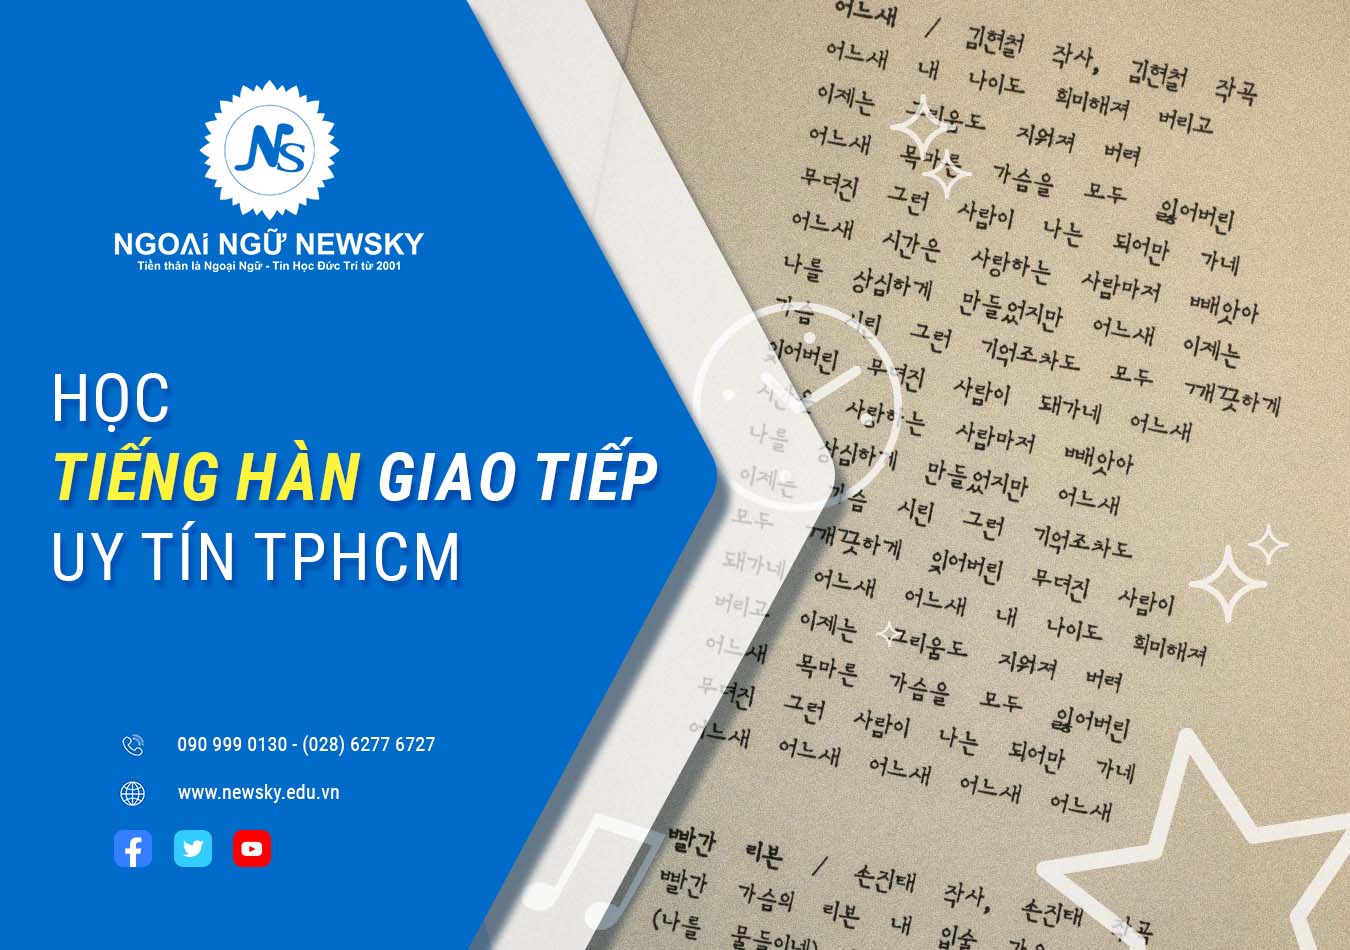 Học tiếng Hàn giao tiếp uy tín TPHCM